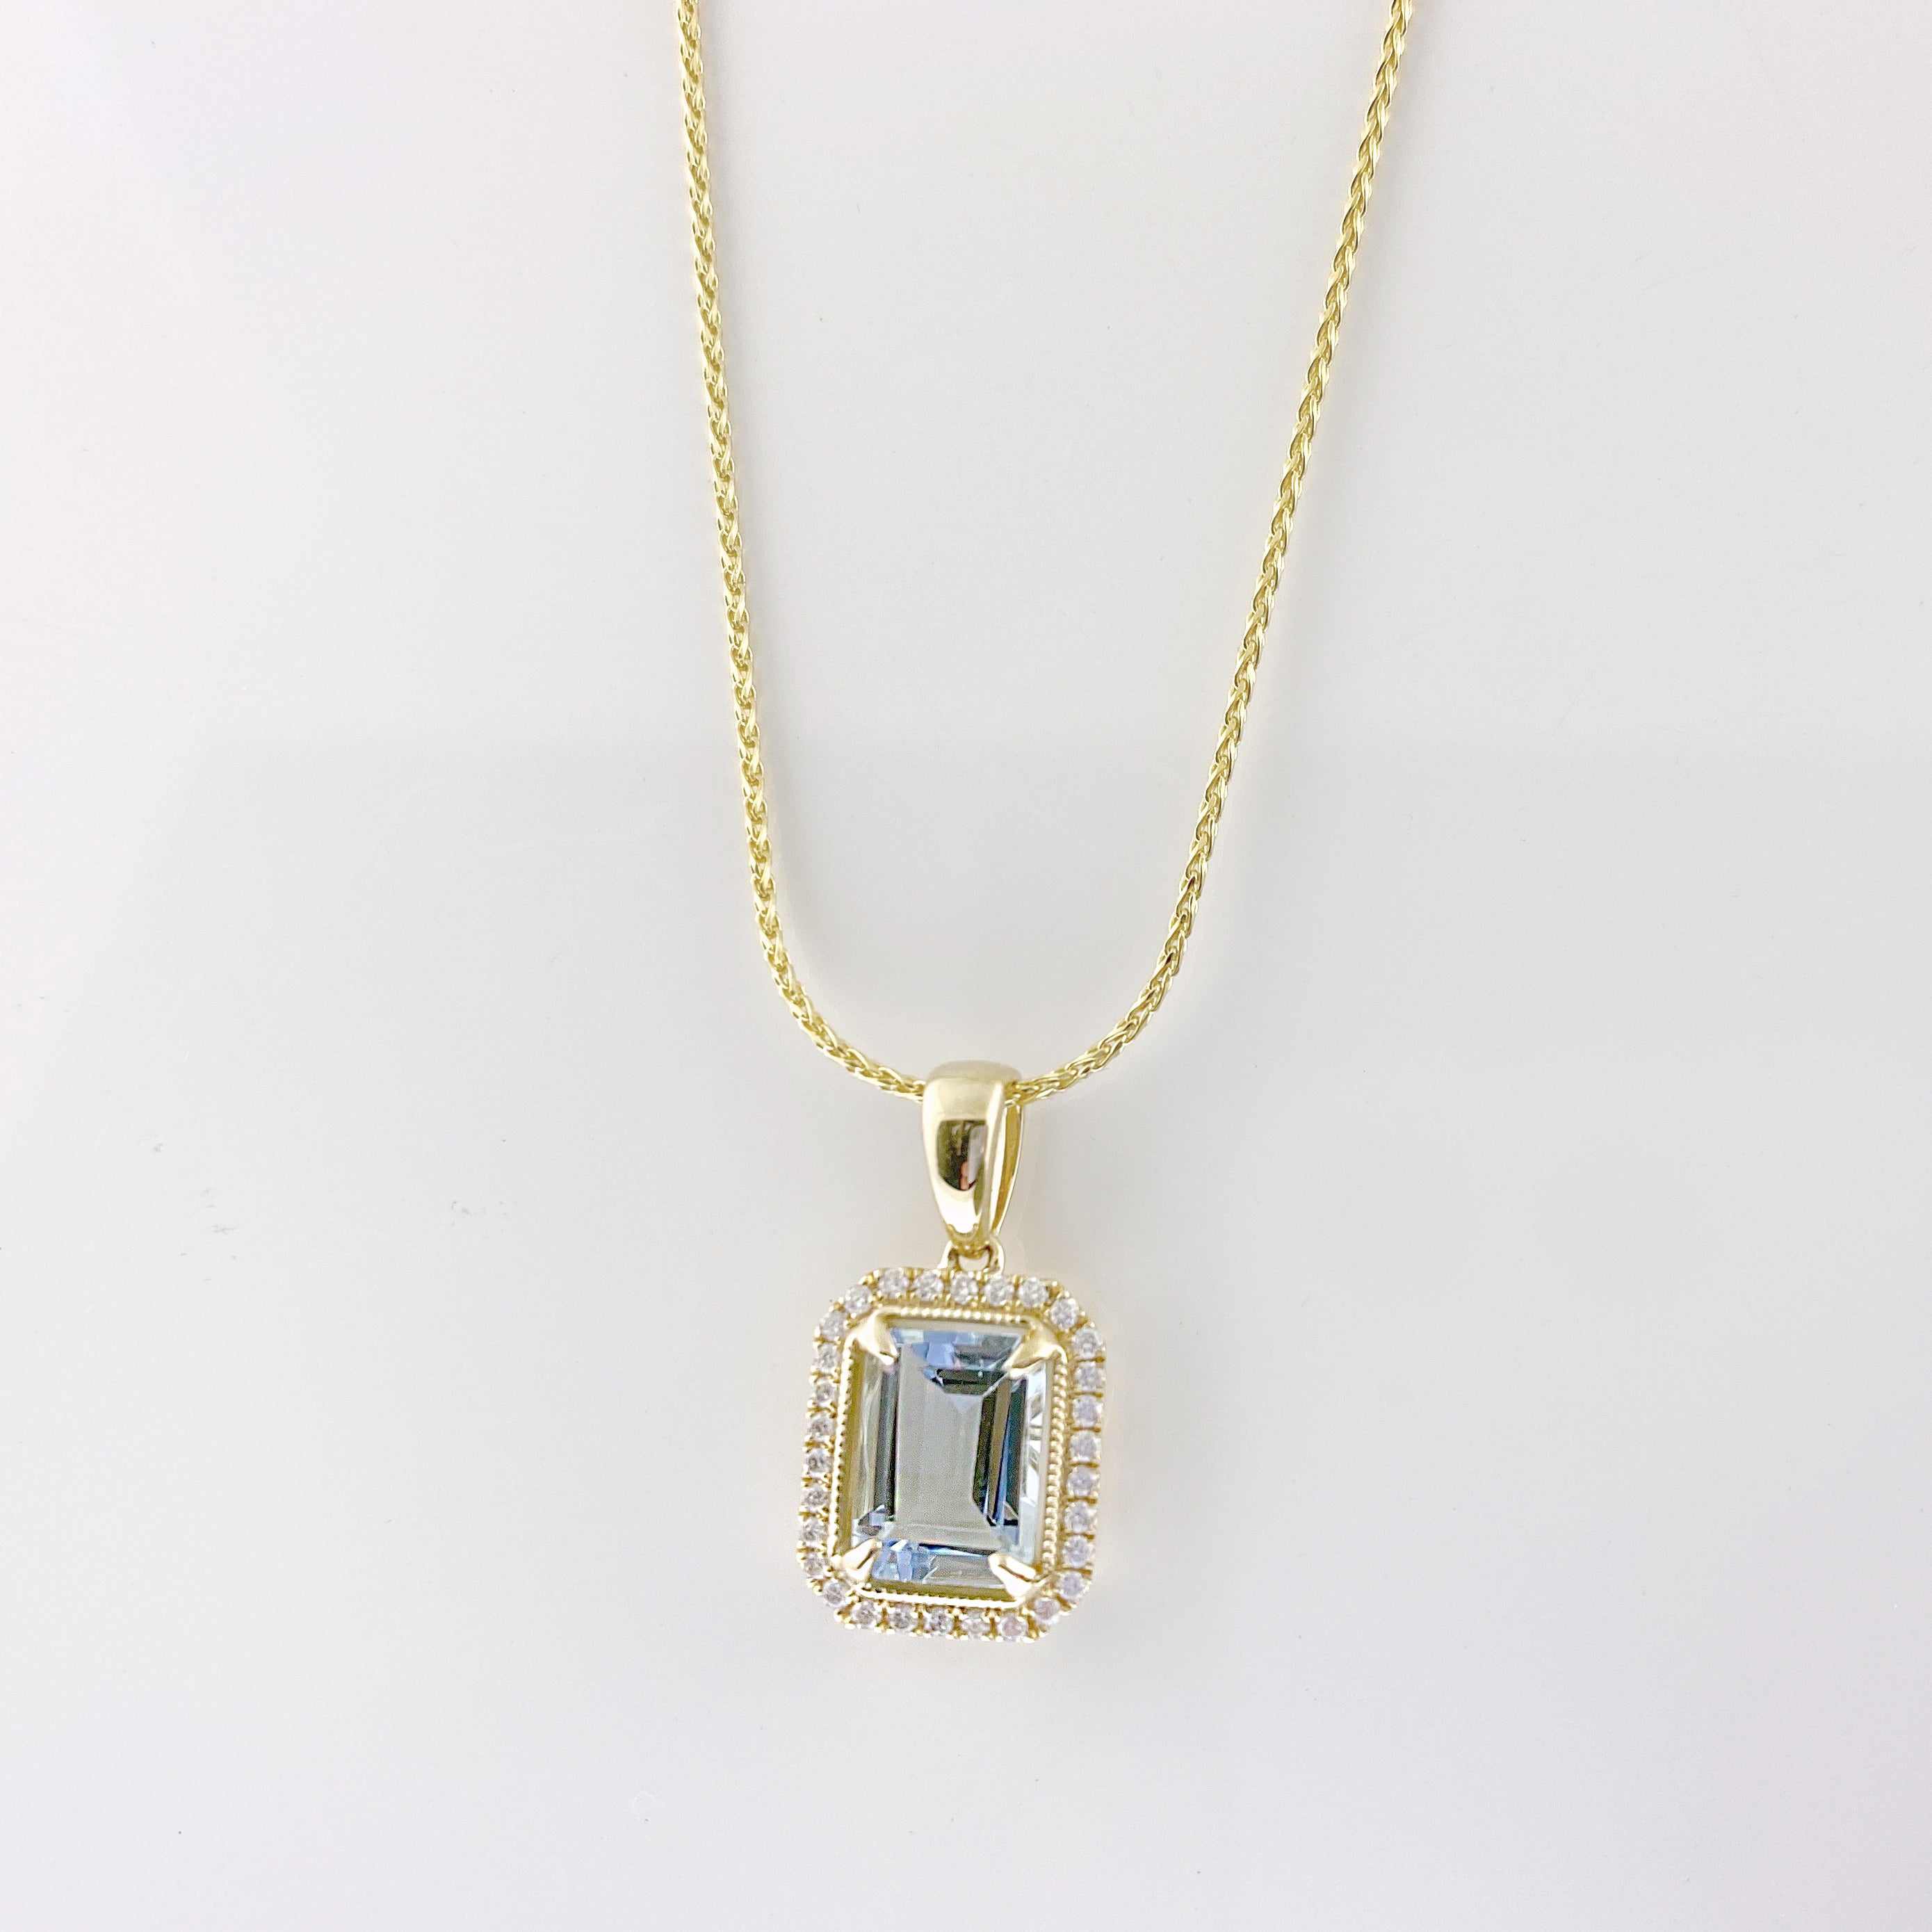 Buy Aquamarine Pendant Necklace, Aquamarine Diamond Pendant, Teardrop Aquamarine  Necklace Online in India - Etsy